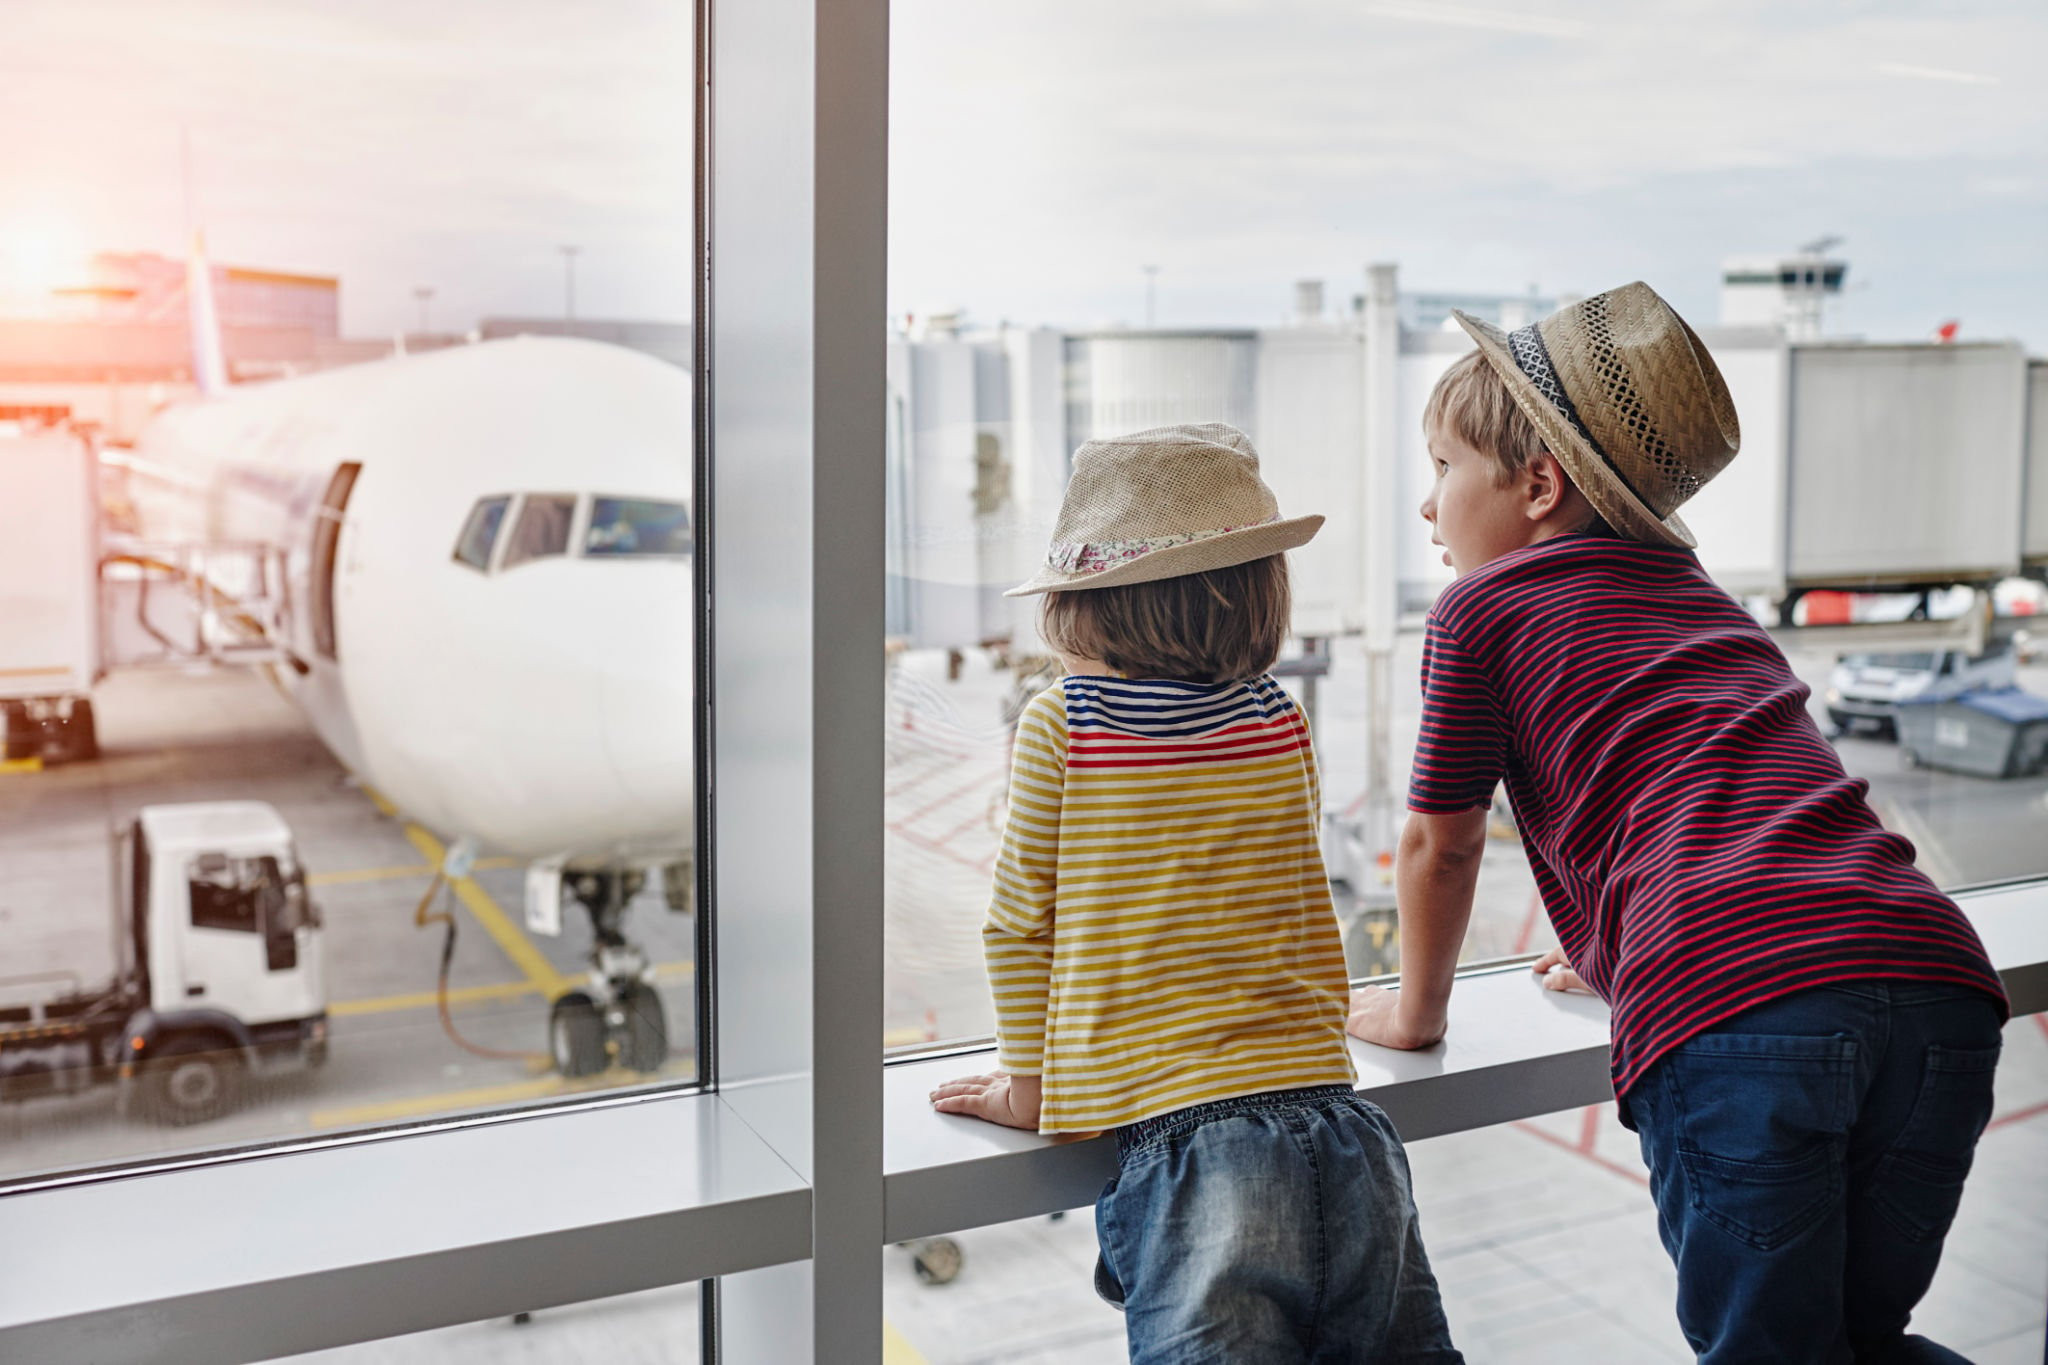 Documentos necessários para viagem internacional: conheça o checklist para visitar outros países | Crianças no aeroporto | Conexão123